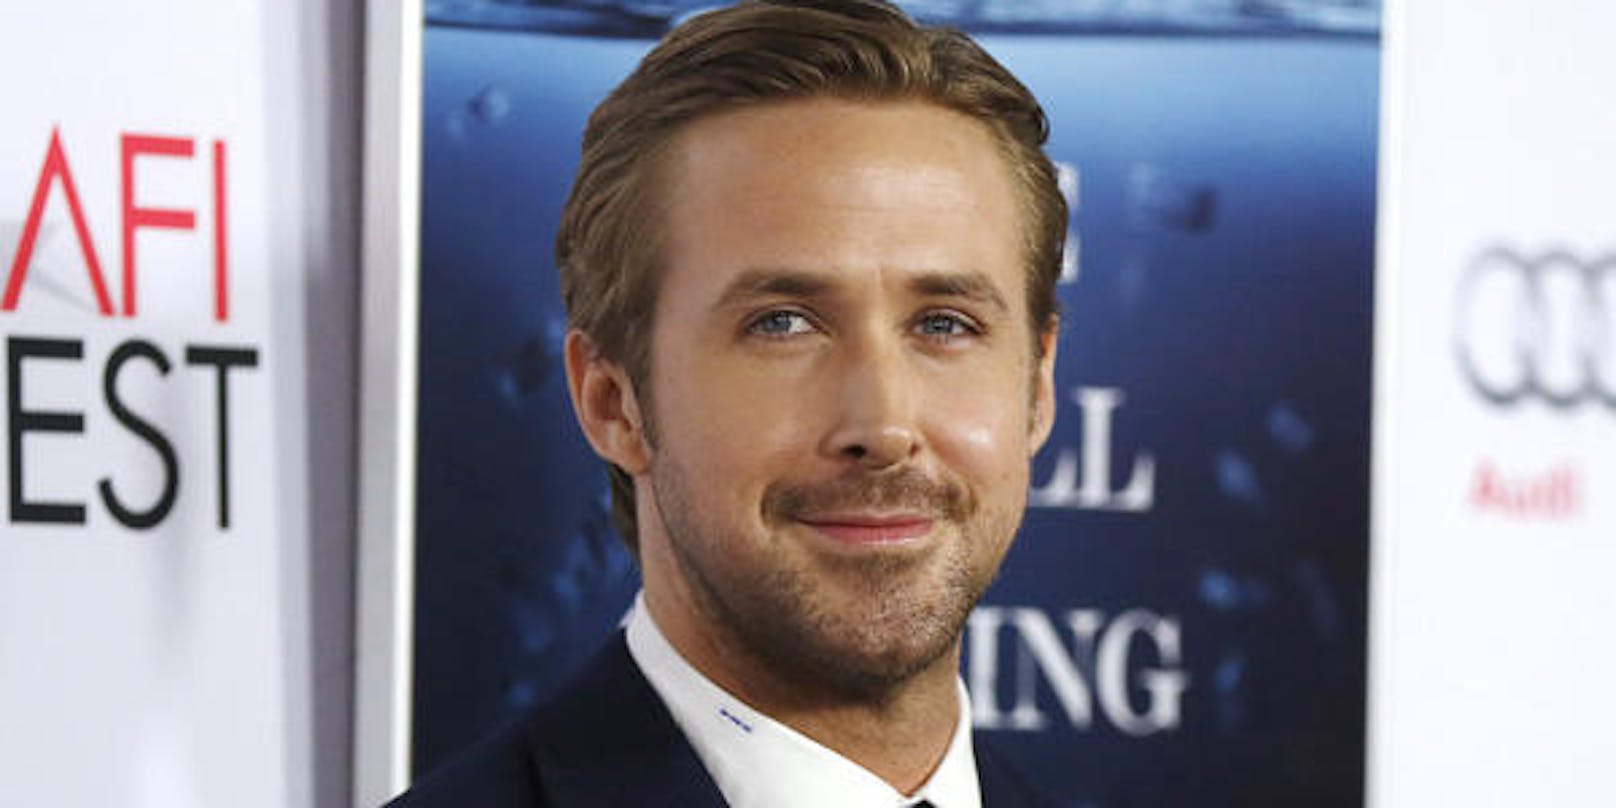 Schauspieler Ryan Gosling hat eine neue Filmrolle.